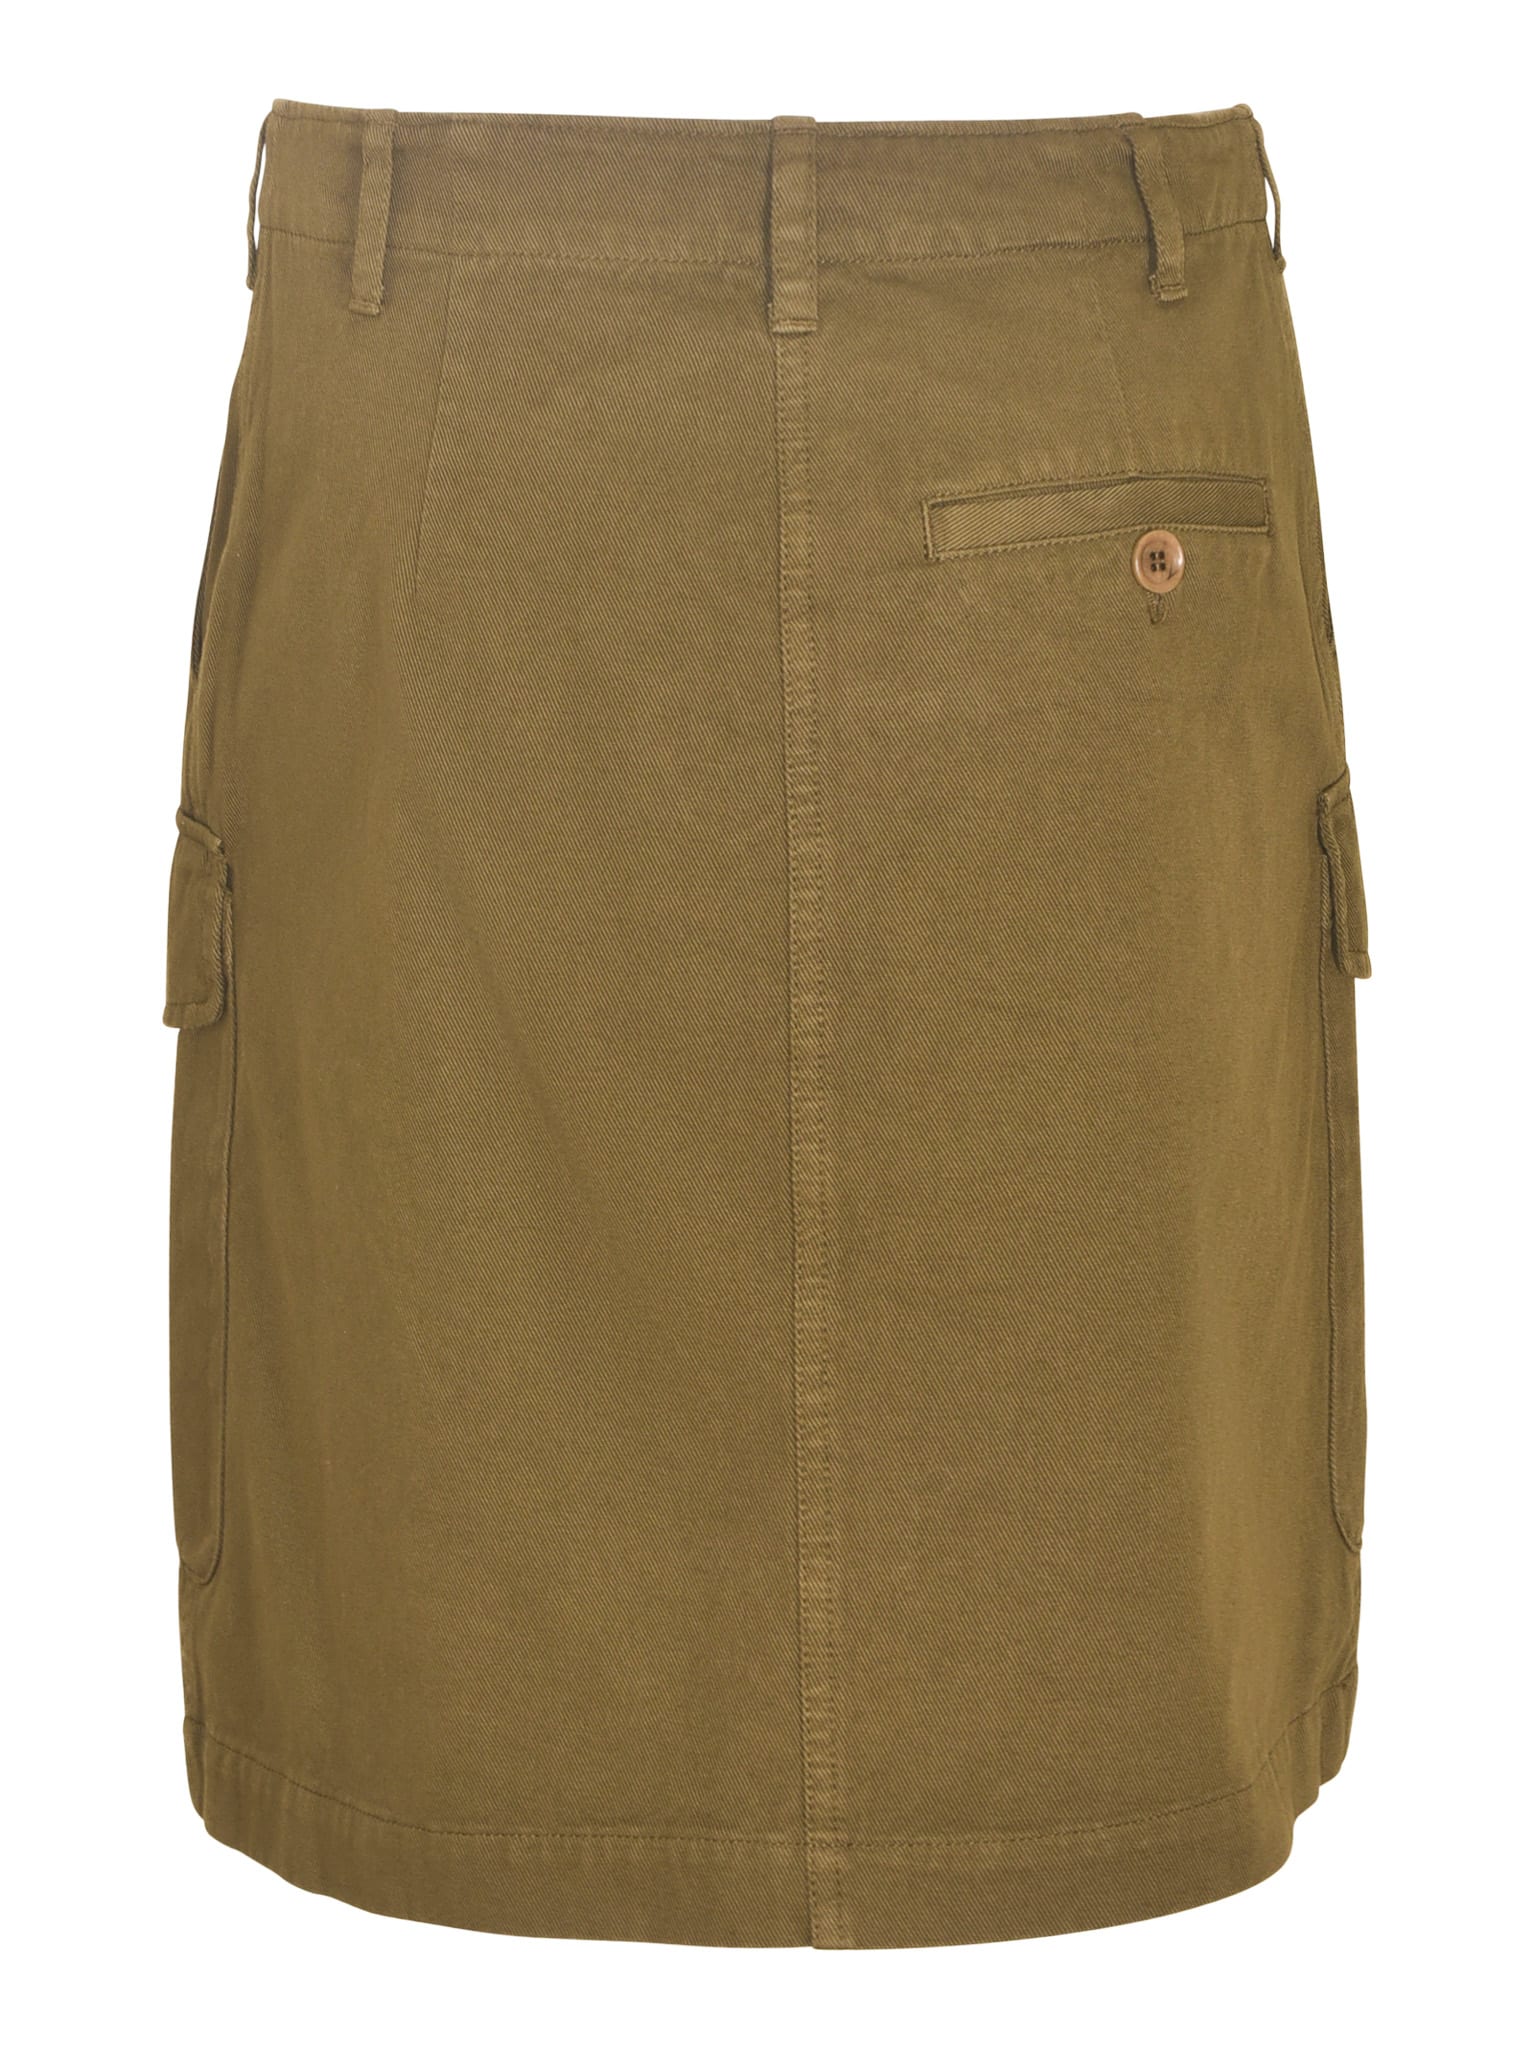 Short Plain Cargo Skirt